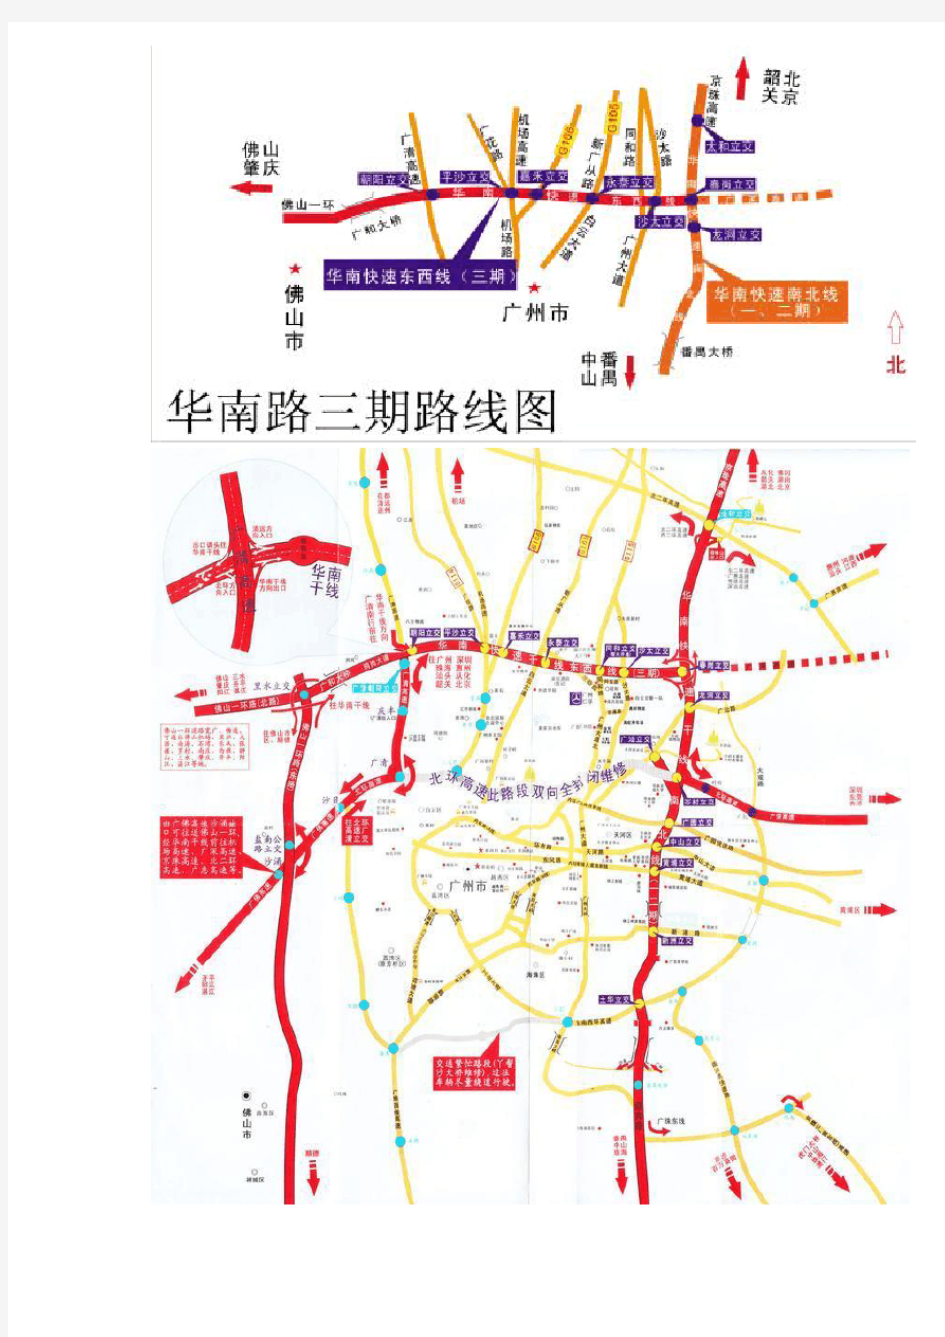 华南快速干线的详细线路图与各个出入口